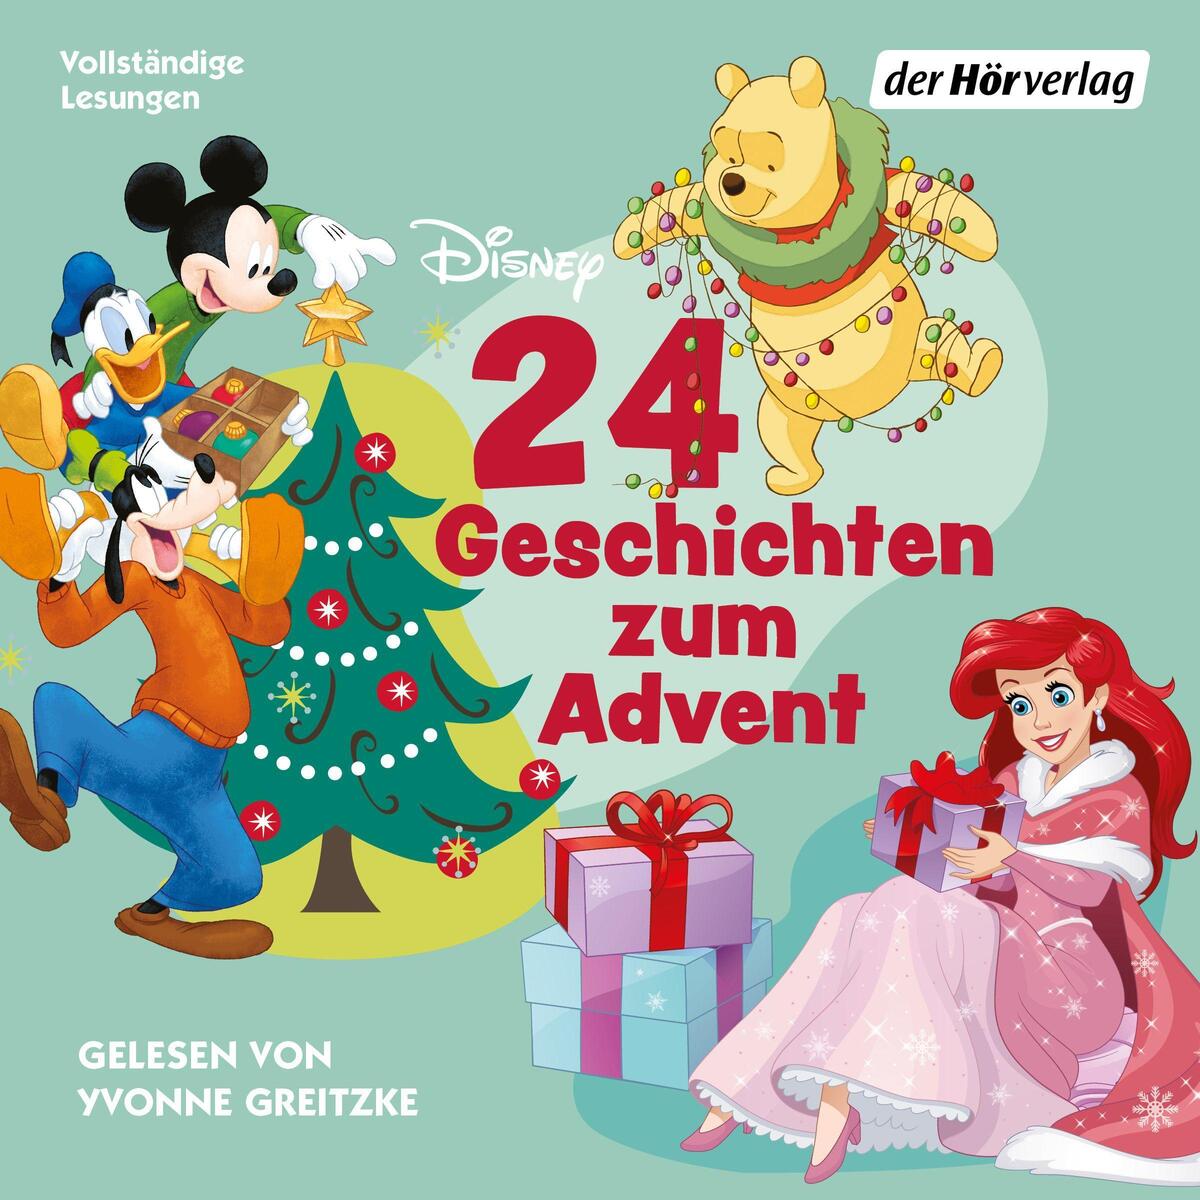 24 Geschichten zum Advent (Disney) von Hoerverlag DHV Der